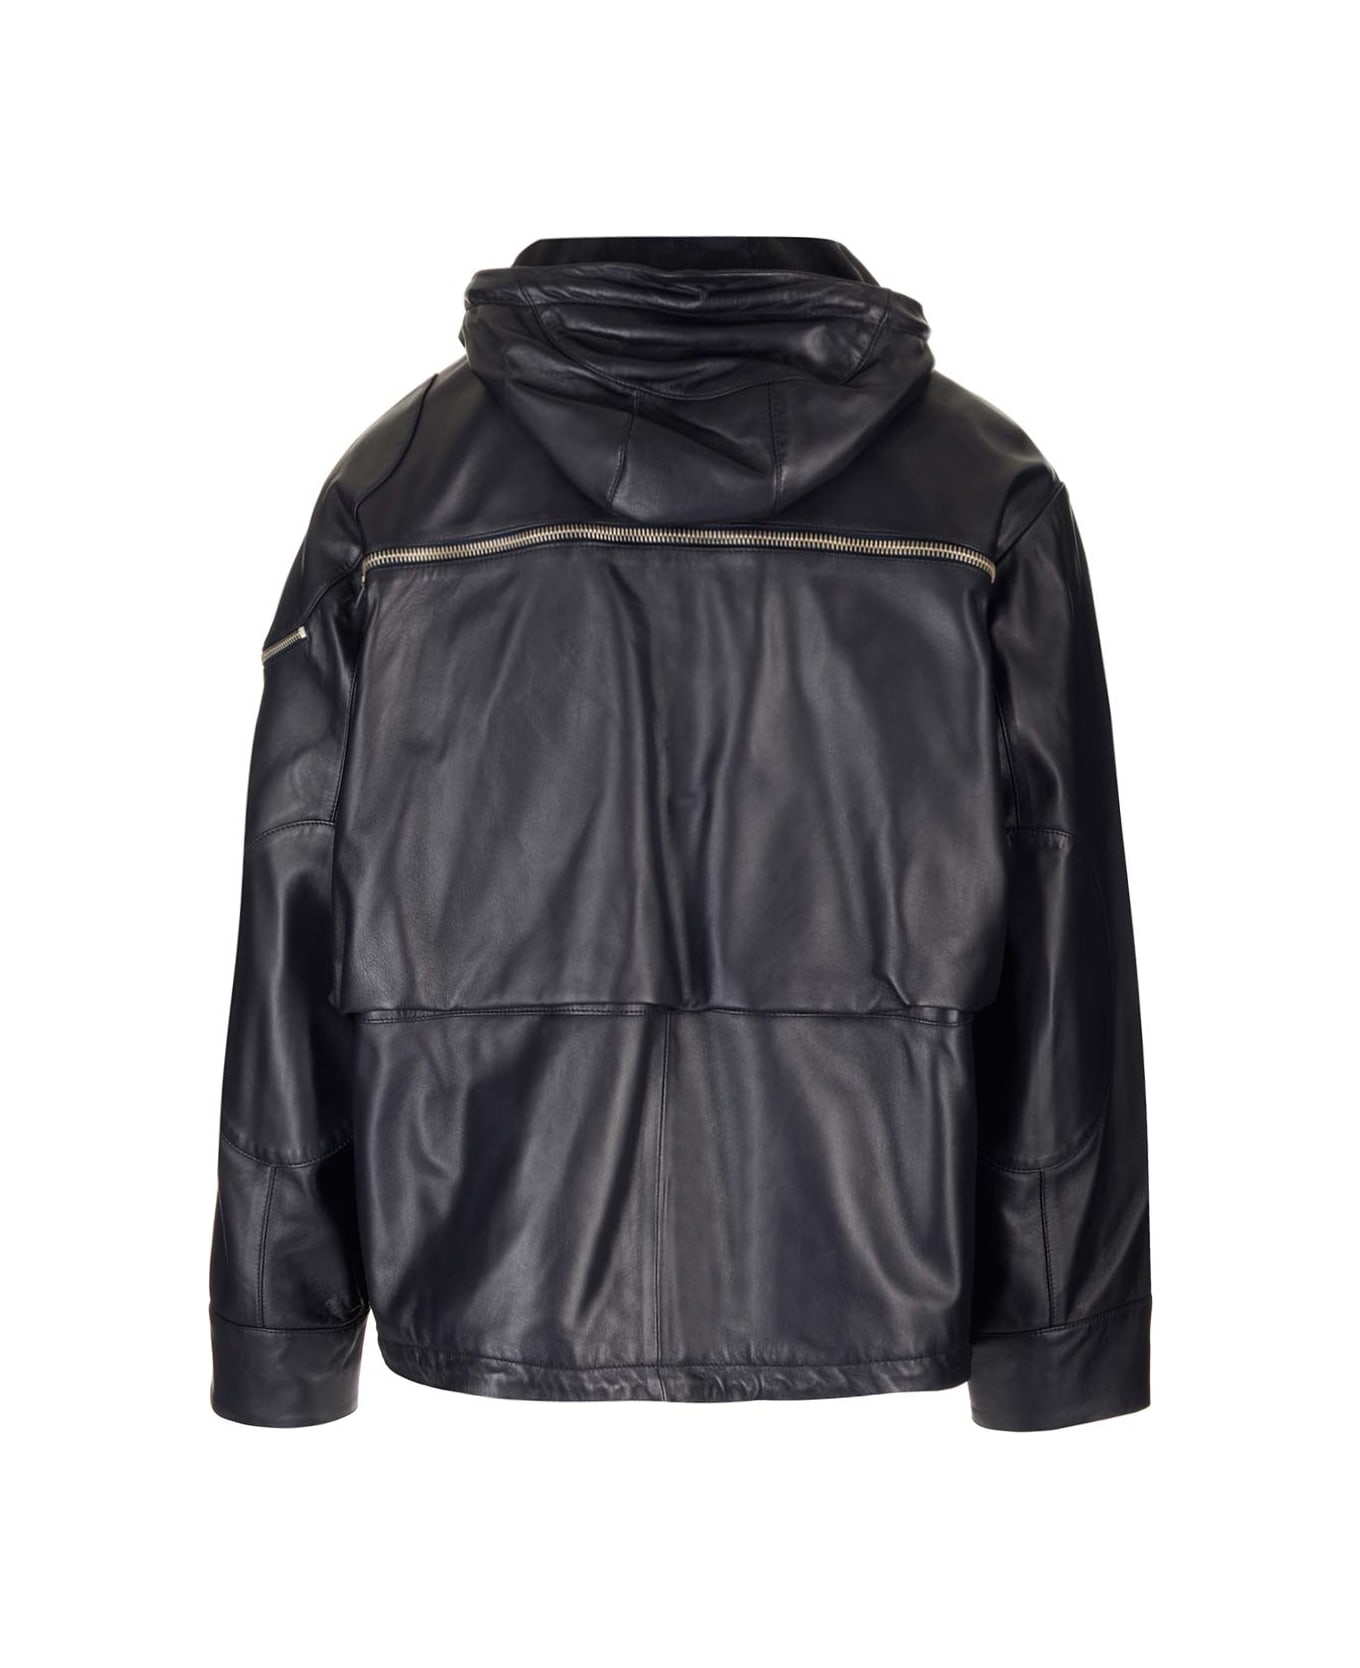 Off-White Leather Jacket - Black